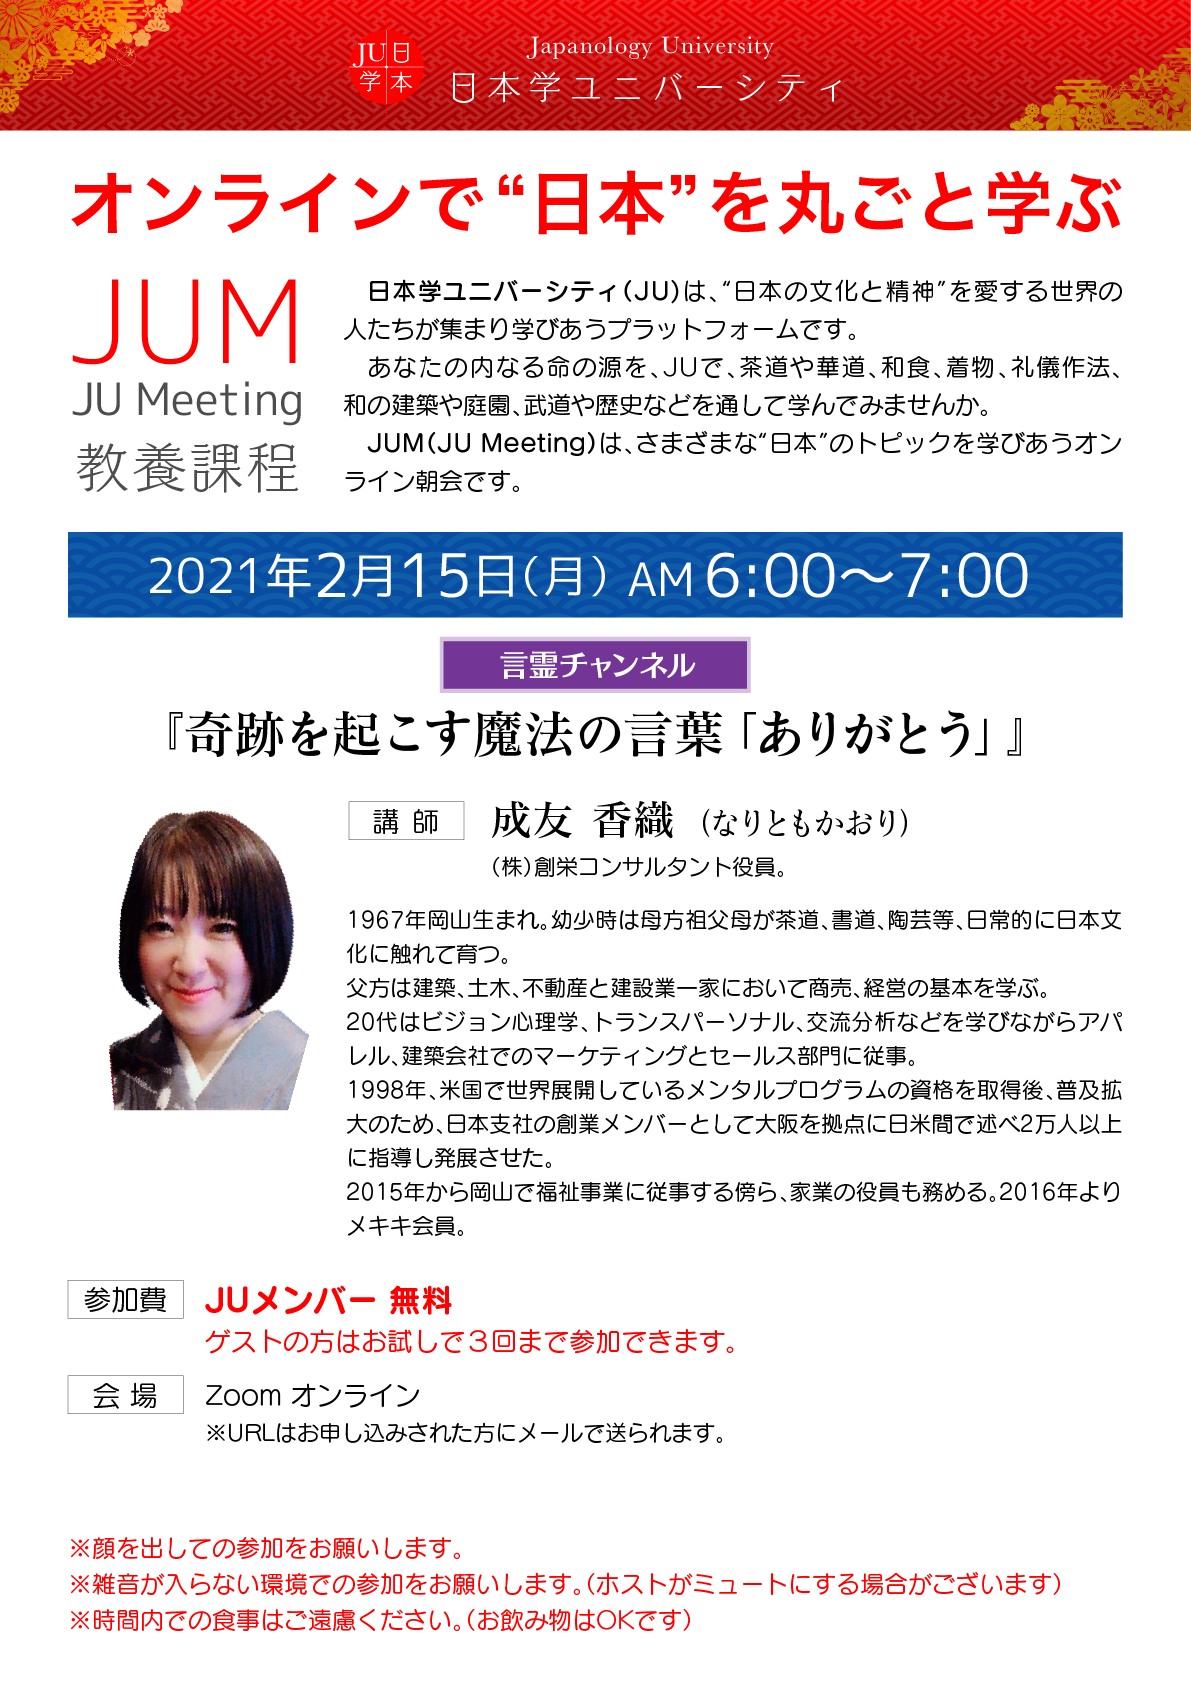 0215 Jum 奇跡を起こす魔法の言葉 ありがとう 日本学ユニバーシティ Ju